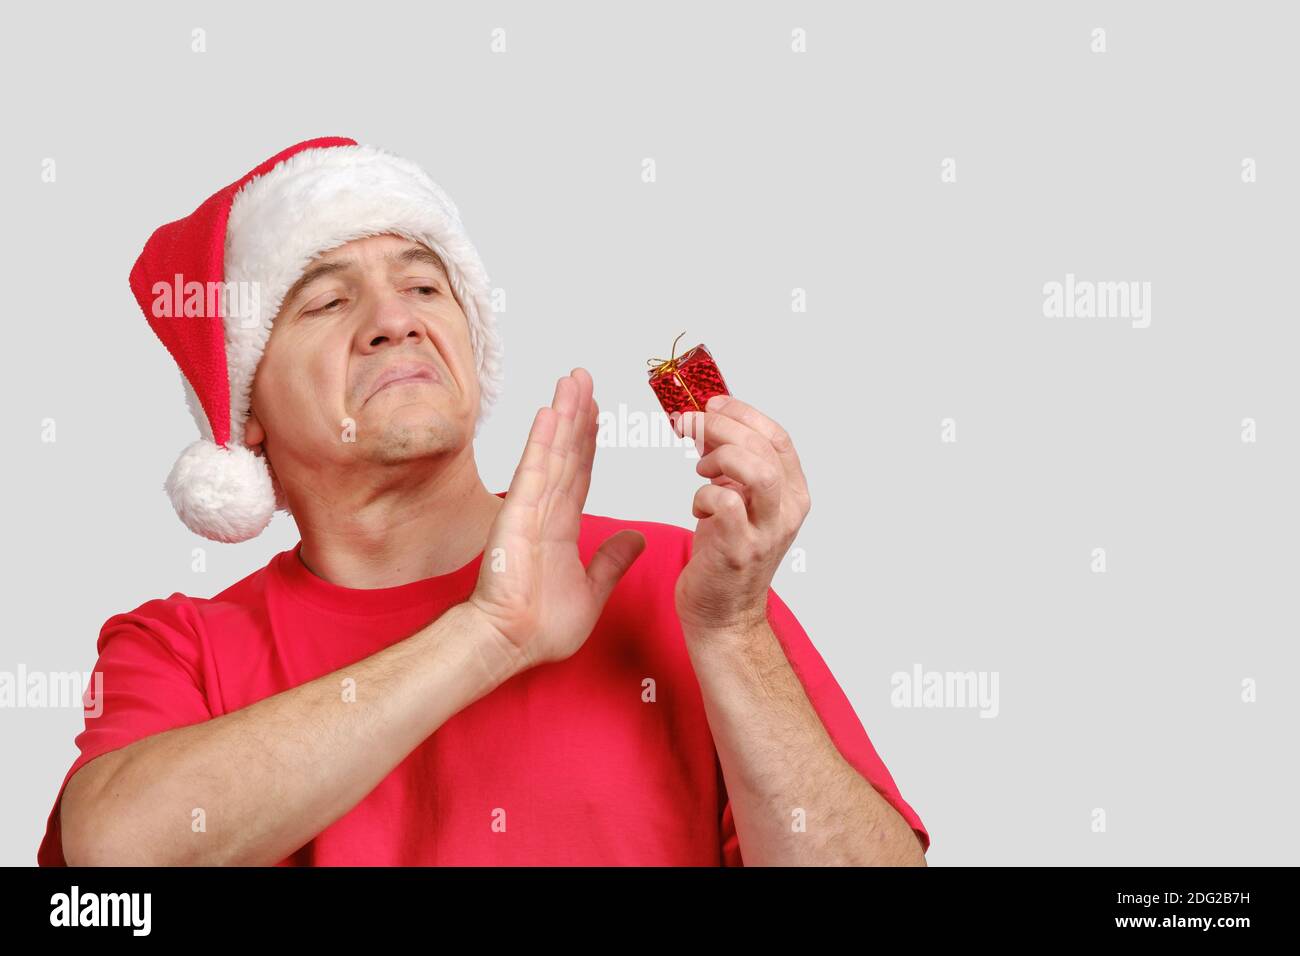 Enttäuschung Mann mittleren Alters in Santa Hut hält schlechte kleine Weihnachten Geschenk Stockfoto